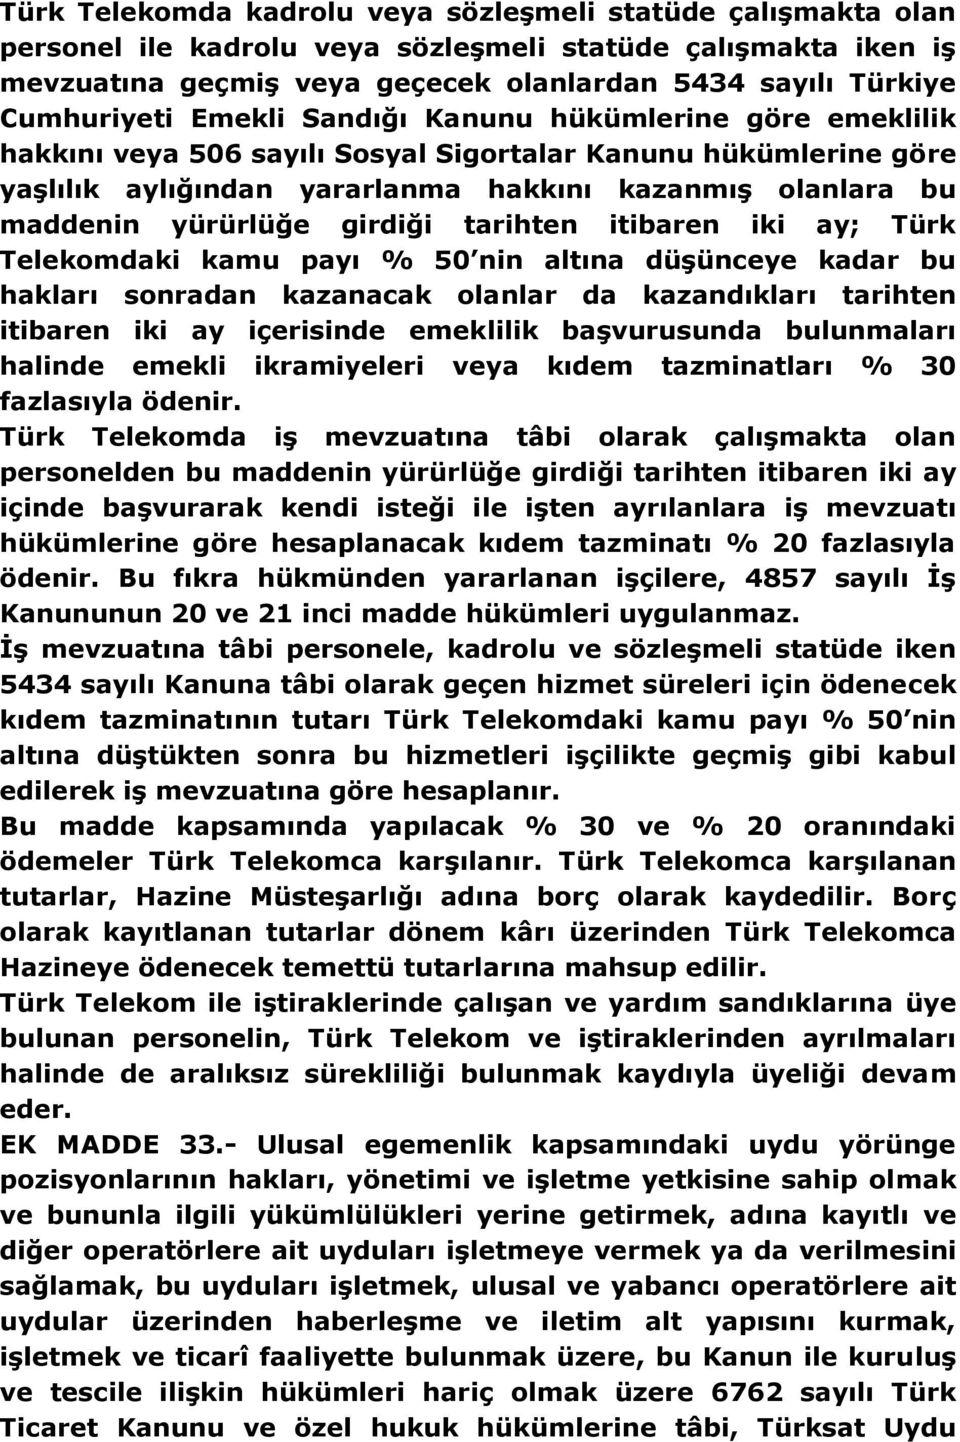 yürürlüğe girdiği tarihten itibaren iki ay; Türk Telekomdaki kamu payı % 50 nin altına düşünceye kadar bu hakları sonradan kazanacak olanlar da kazandıkları tarihten itibaren iki ay içerisinde